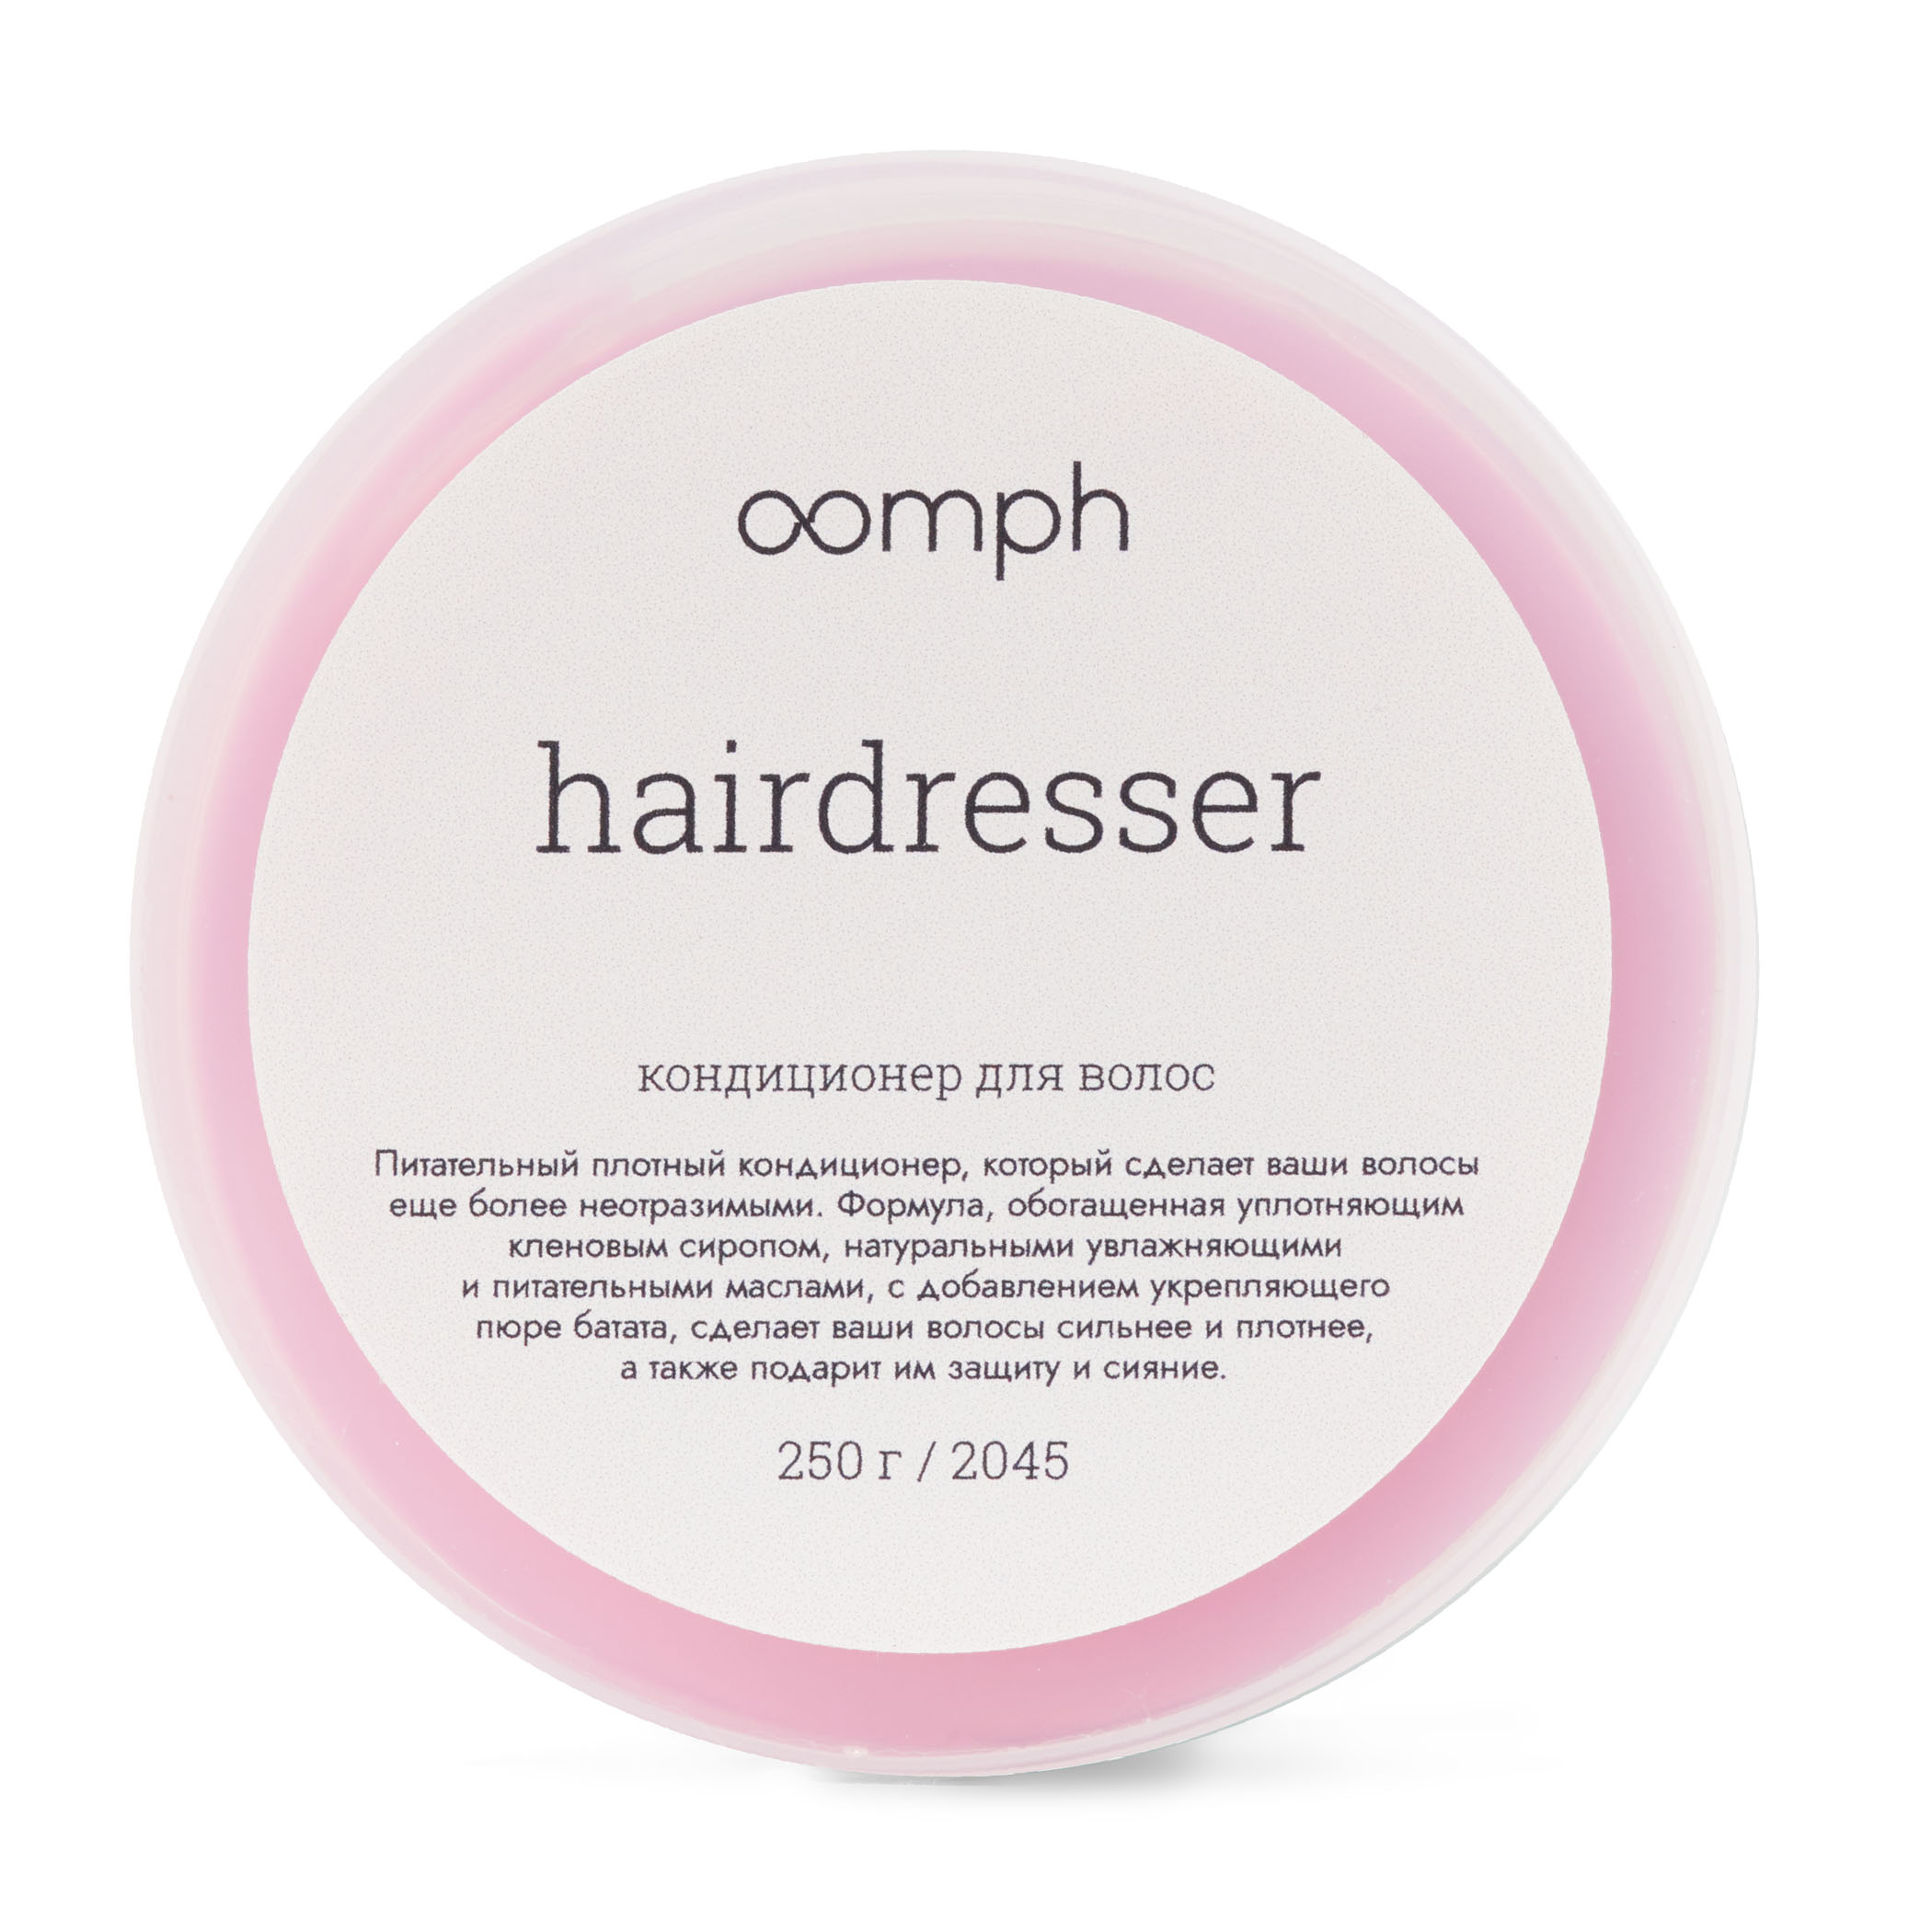 Кондиционер для волос Oomph Hairdresser 250г la sultane de saba масло для тела лотос и франжипани